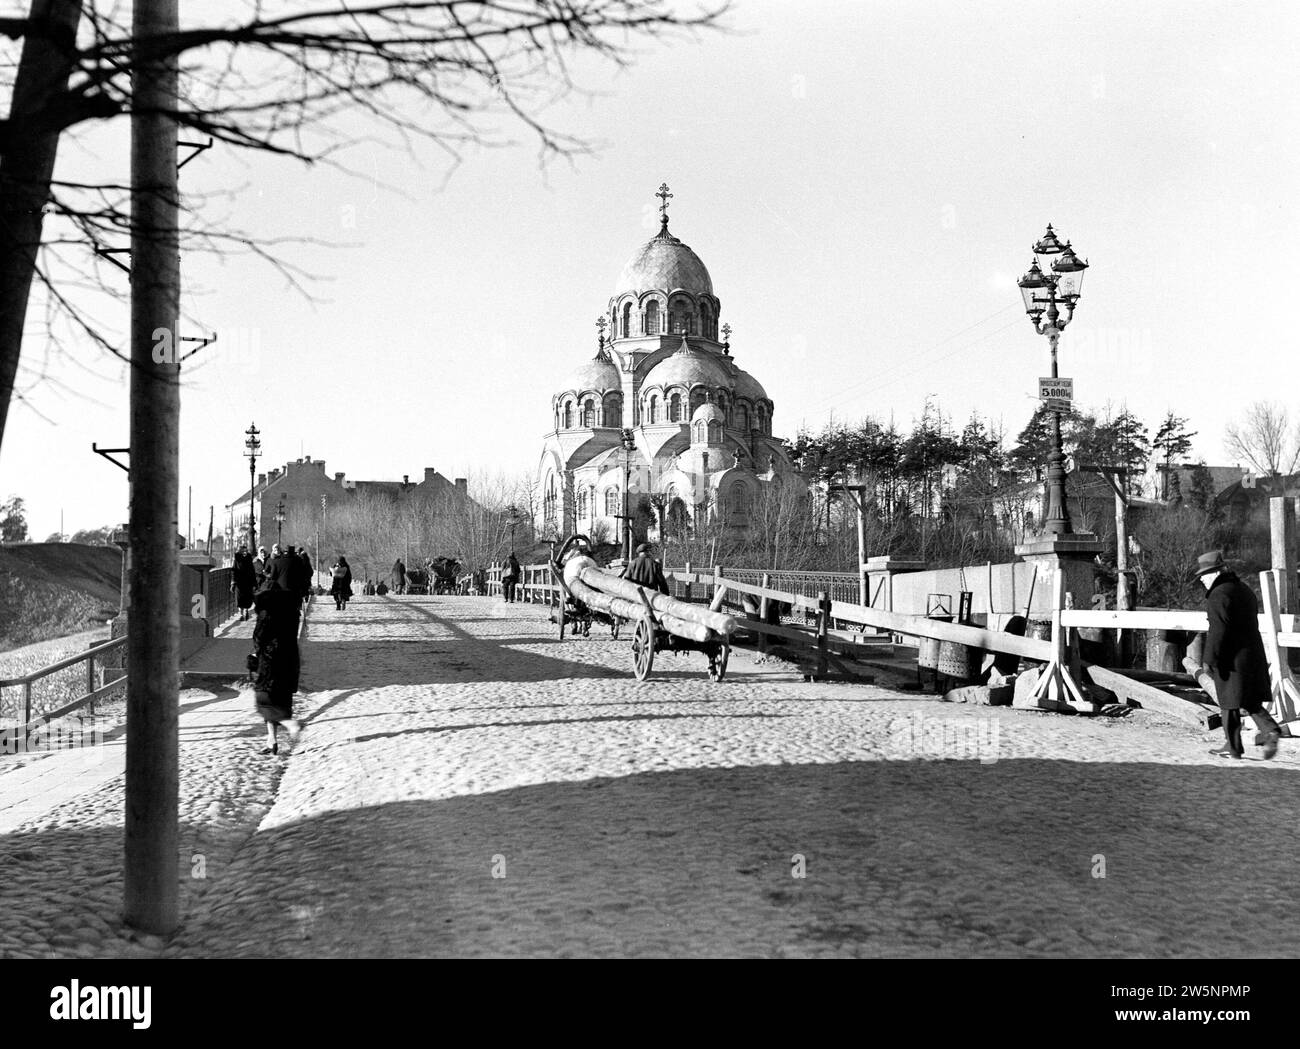 Vilnius. Chiesa ortodossa dell'apparizione della madre di Dio (Znamenskaya) vicino al ponte di Zverynas sul fiume Neris. Sul ponte un autista con un mallejan CA. 1934 Foto Stock